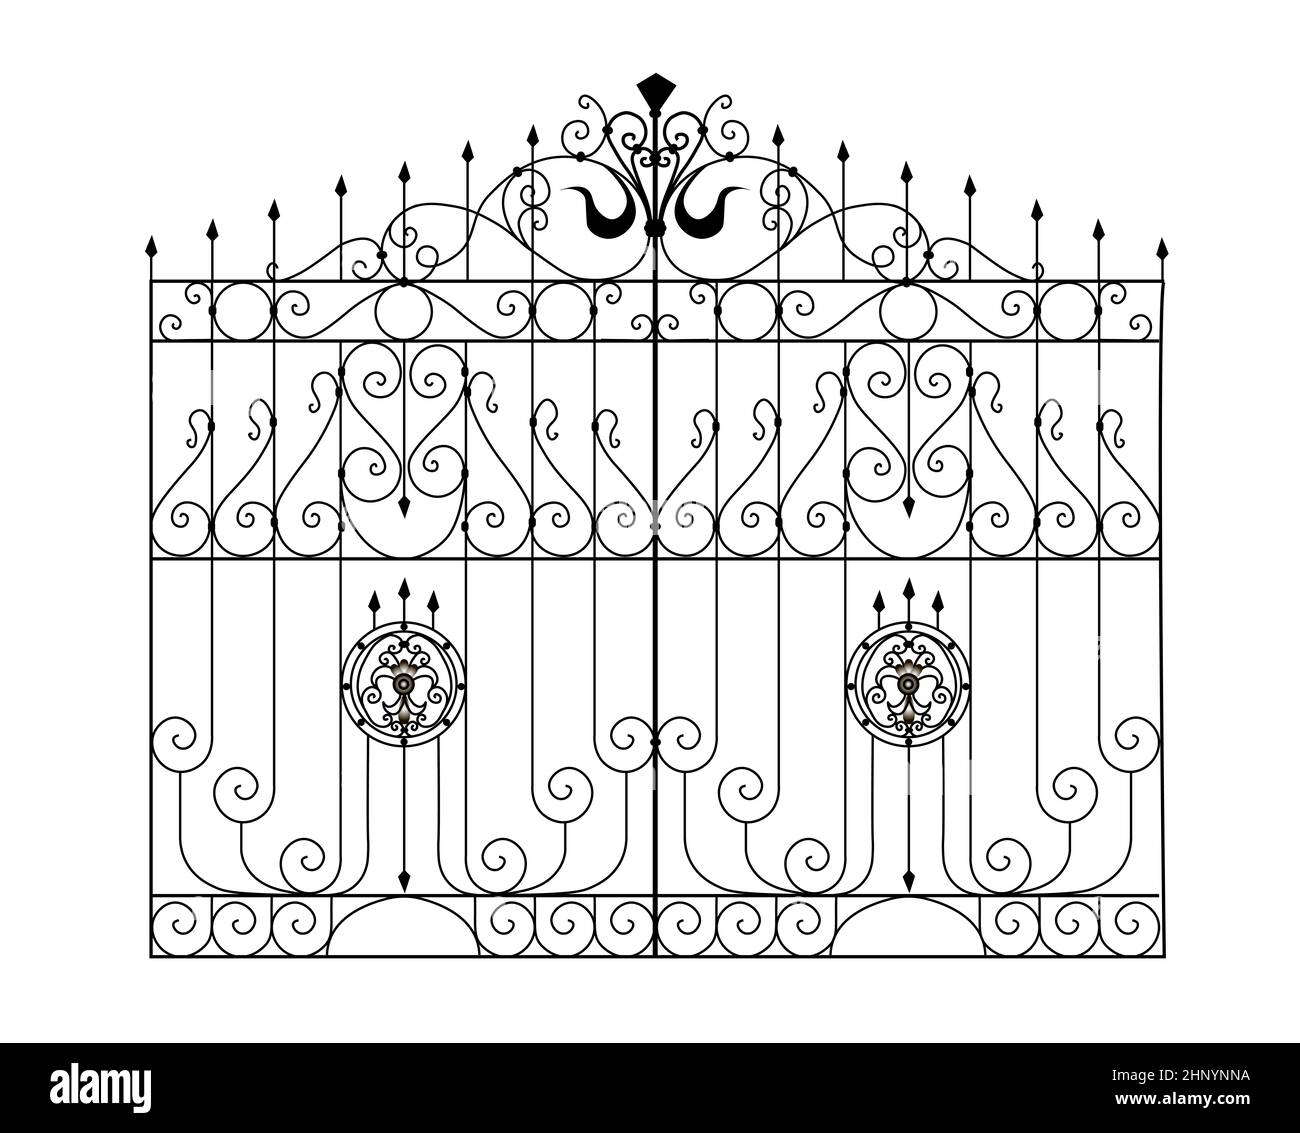 Boceto de puertas de metal, puerta de jardín de doble hoja, original, ilustración de productos forjados Foto de stock